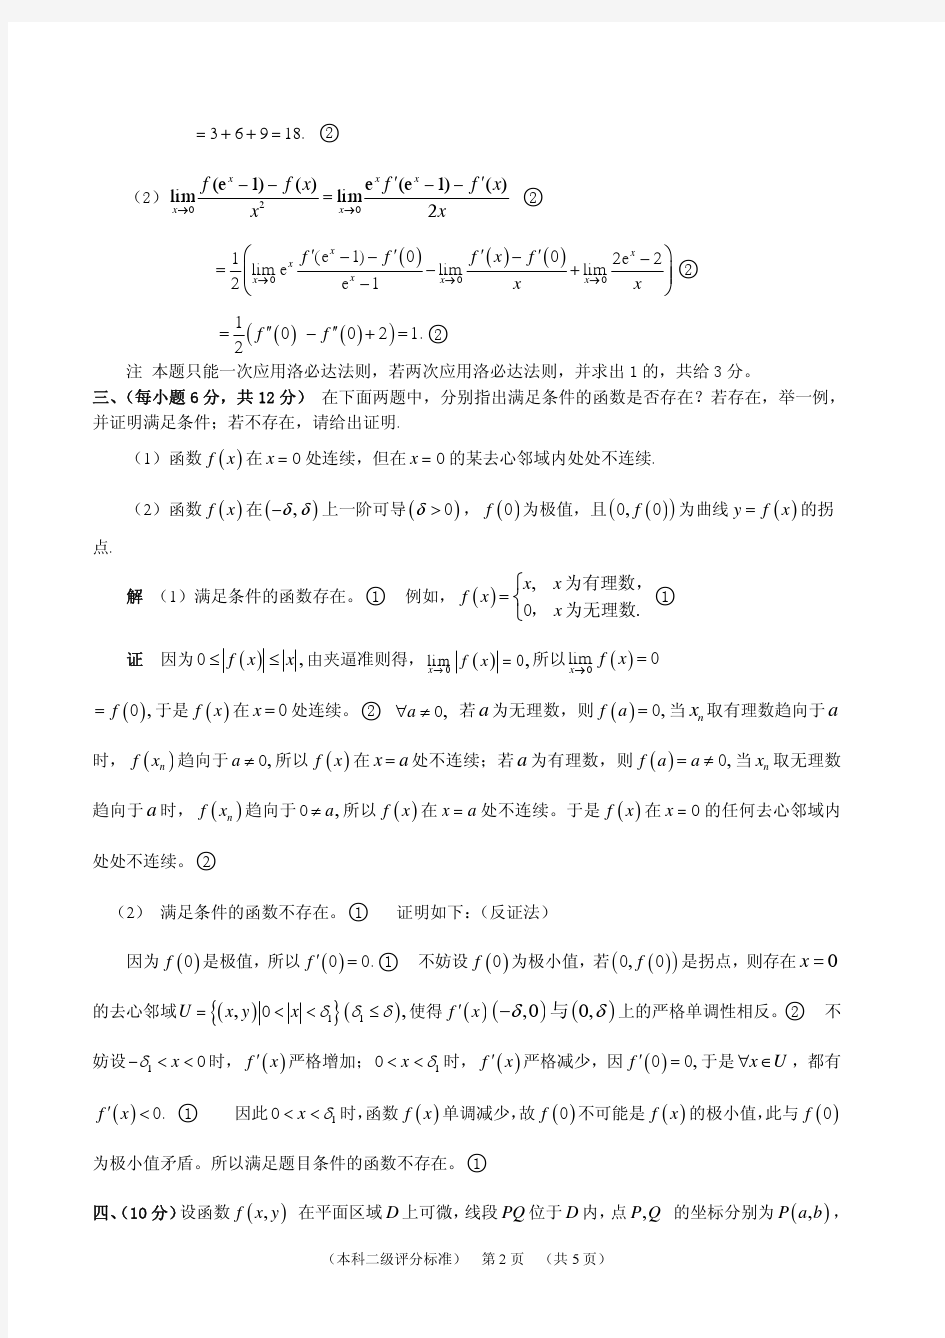 江苏省第十一届高等数学竞赛题(本科二级)评分标准